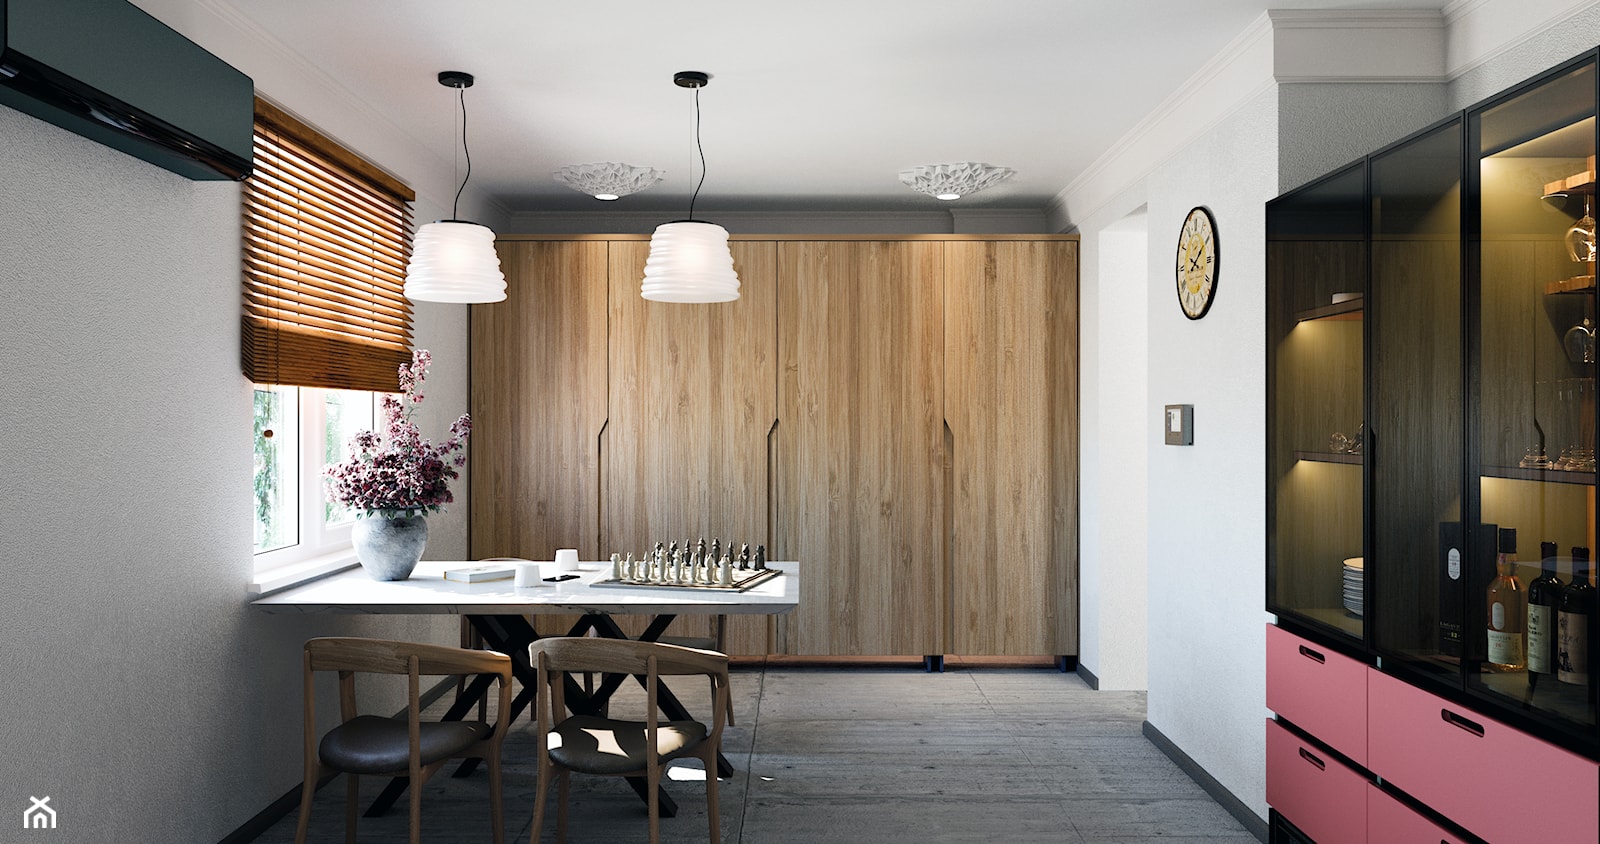 Kuchni - Duża zamknięta biała szara z zabudowaną lodówką kuchnia dwurzędowa z oknem, styl minimalistyczny - zdjęcie od Design Time - Homebook